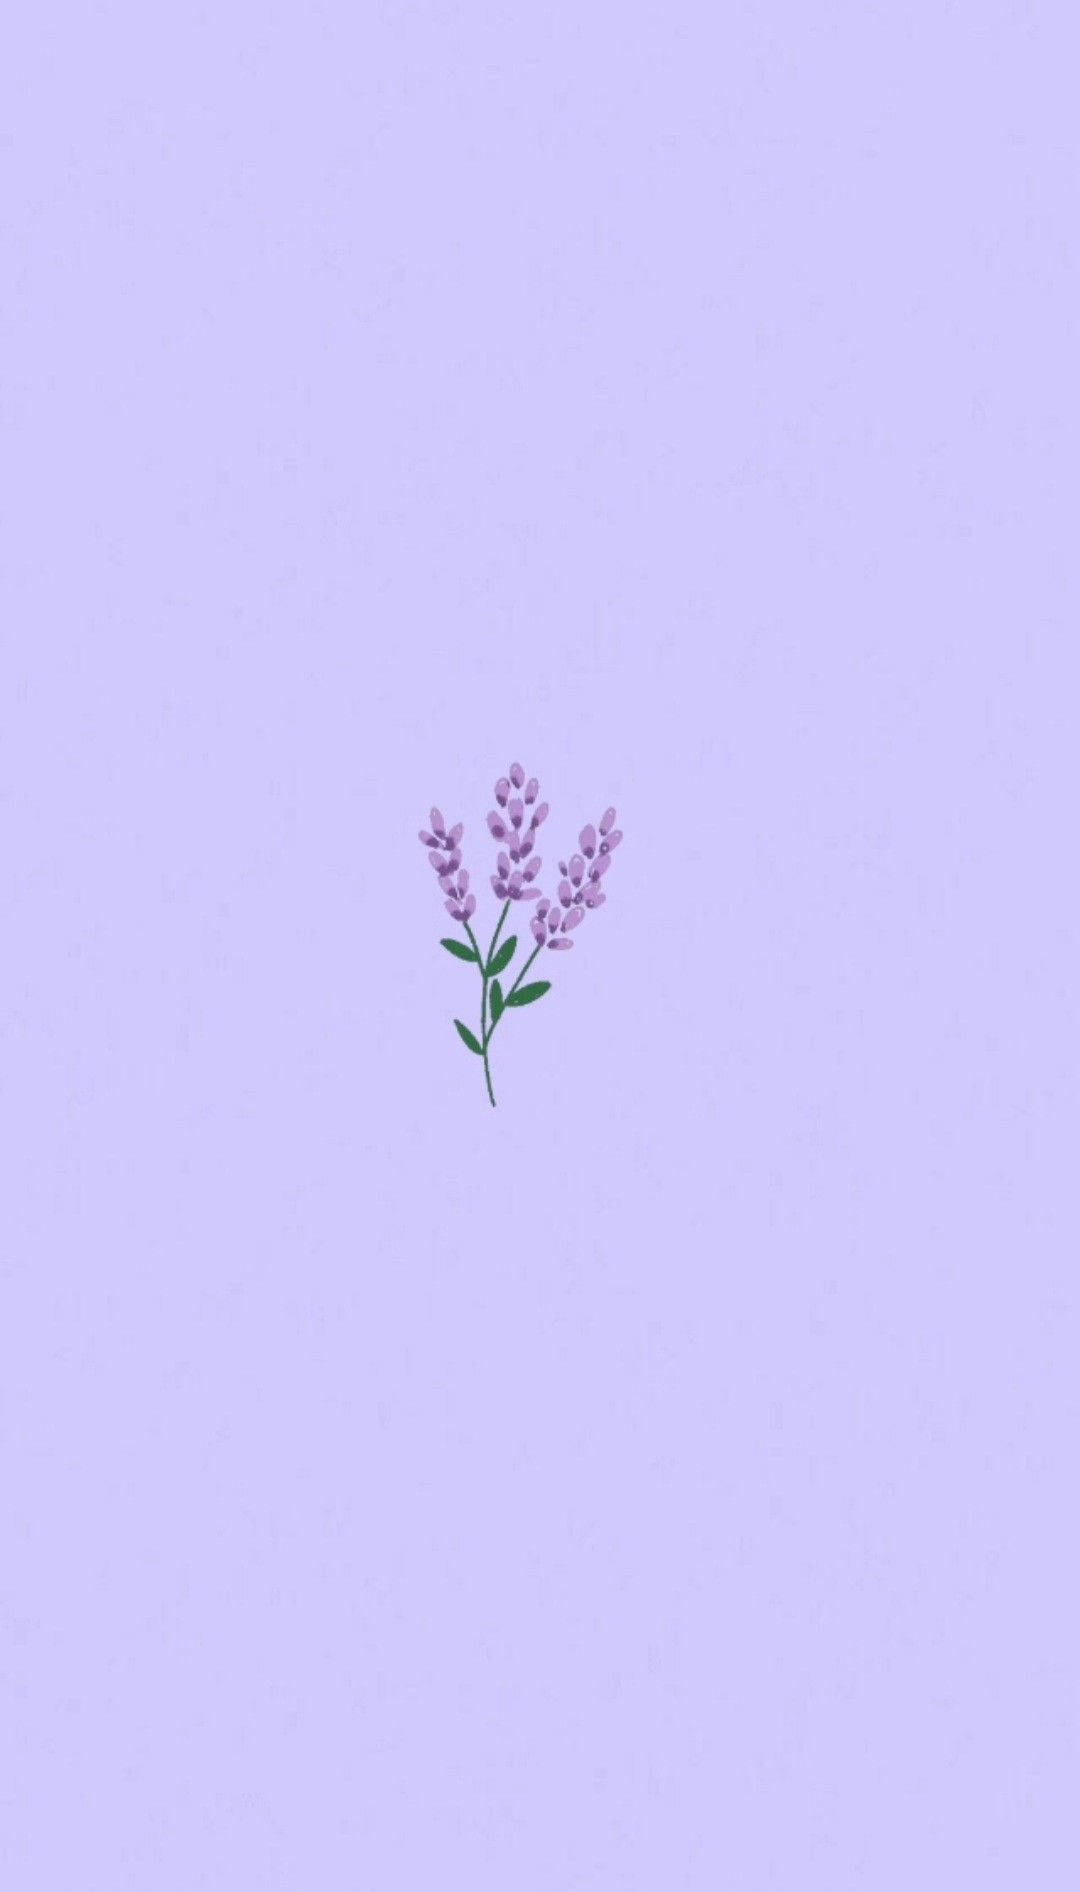 Tìm kiếm một hình nền hoa màu tím thẩm mỹ để cập nhật cho máy tính của bạn? Bạn không cần phải tốn tiền vì chúng tôi có thể cung cấp cho bạn một tập hình nền đẹp nhất. Hãy tải miễn phí ngay!